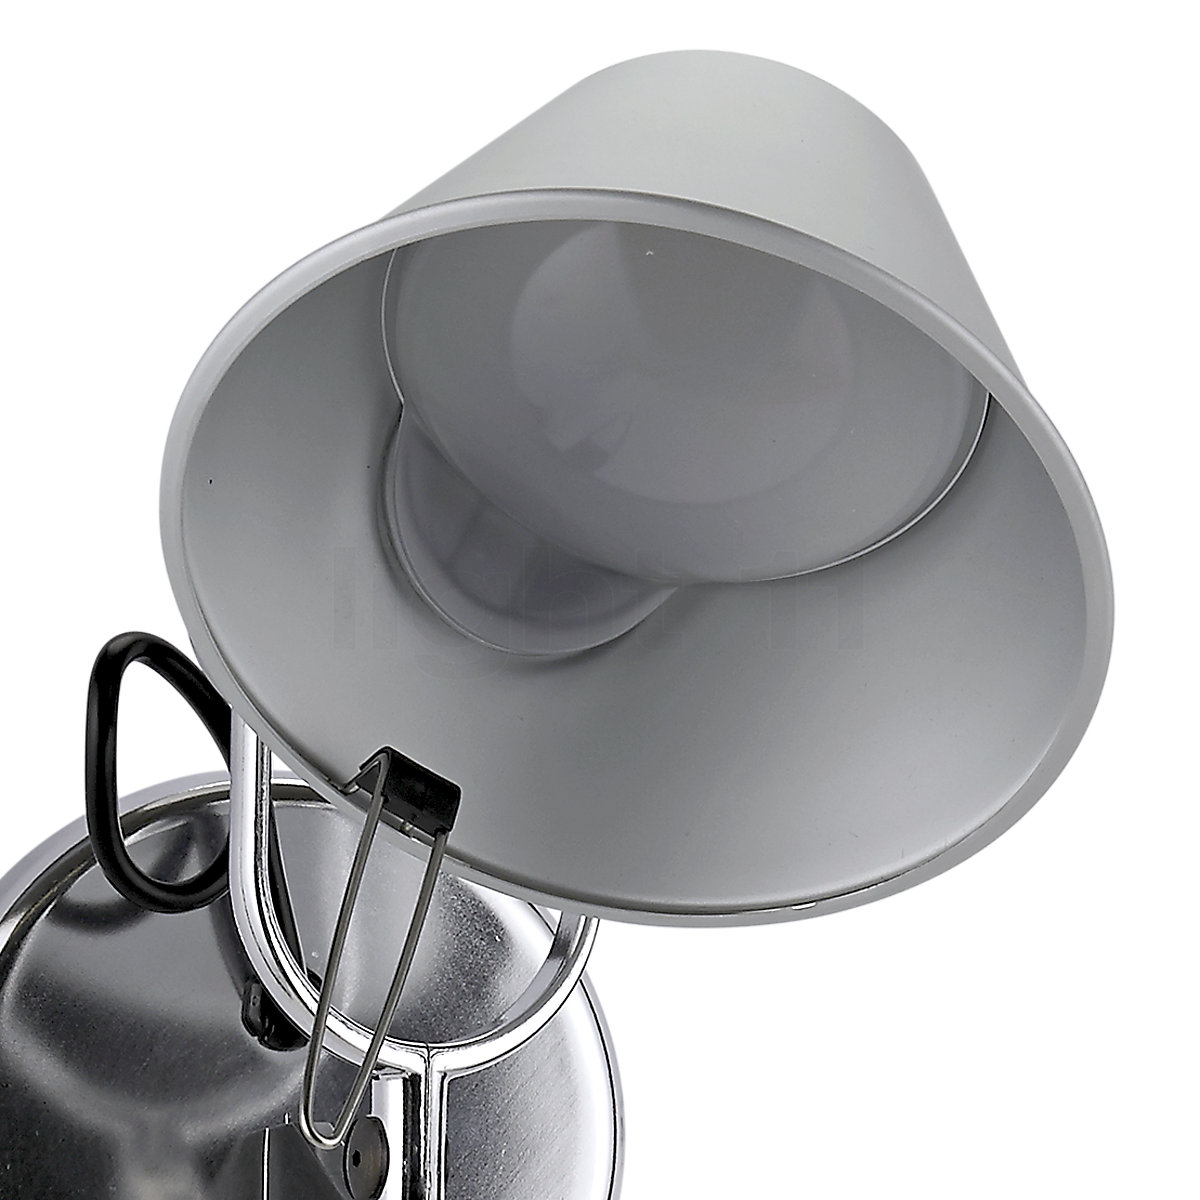 Artemide Tolomeo LED Parete lampada da parete con interruttore o sensore »  Interruttore, Bianco extra caldo (2700K)